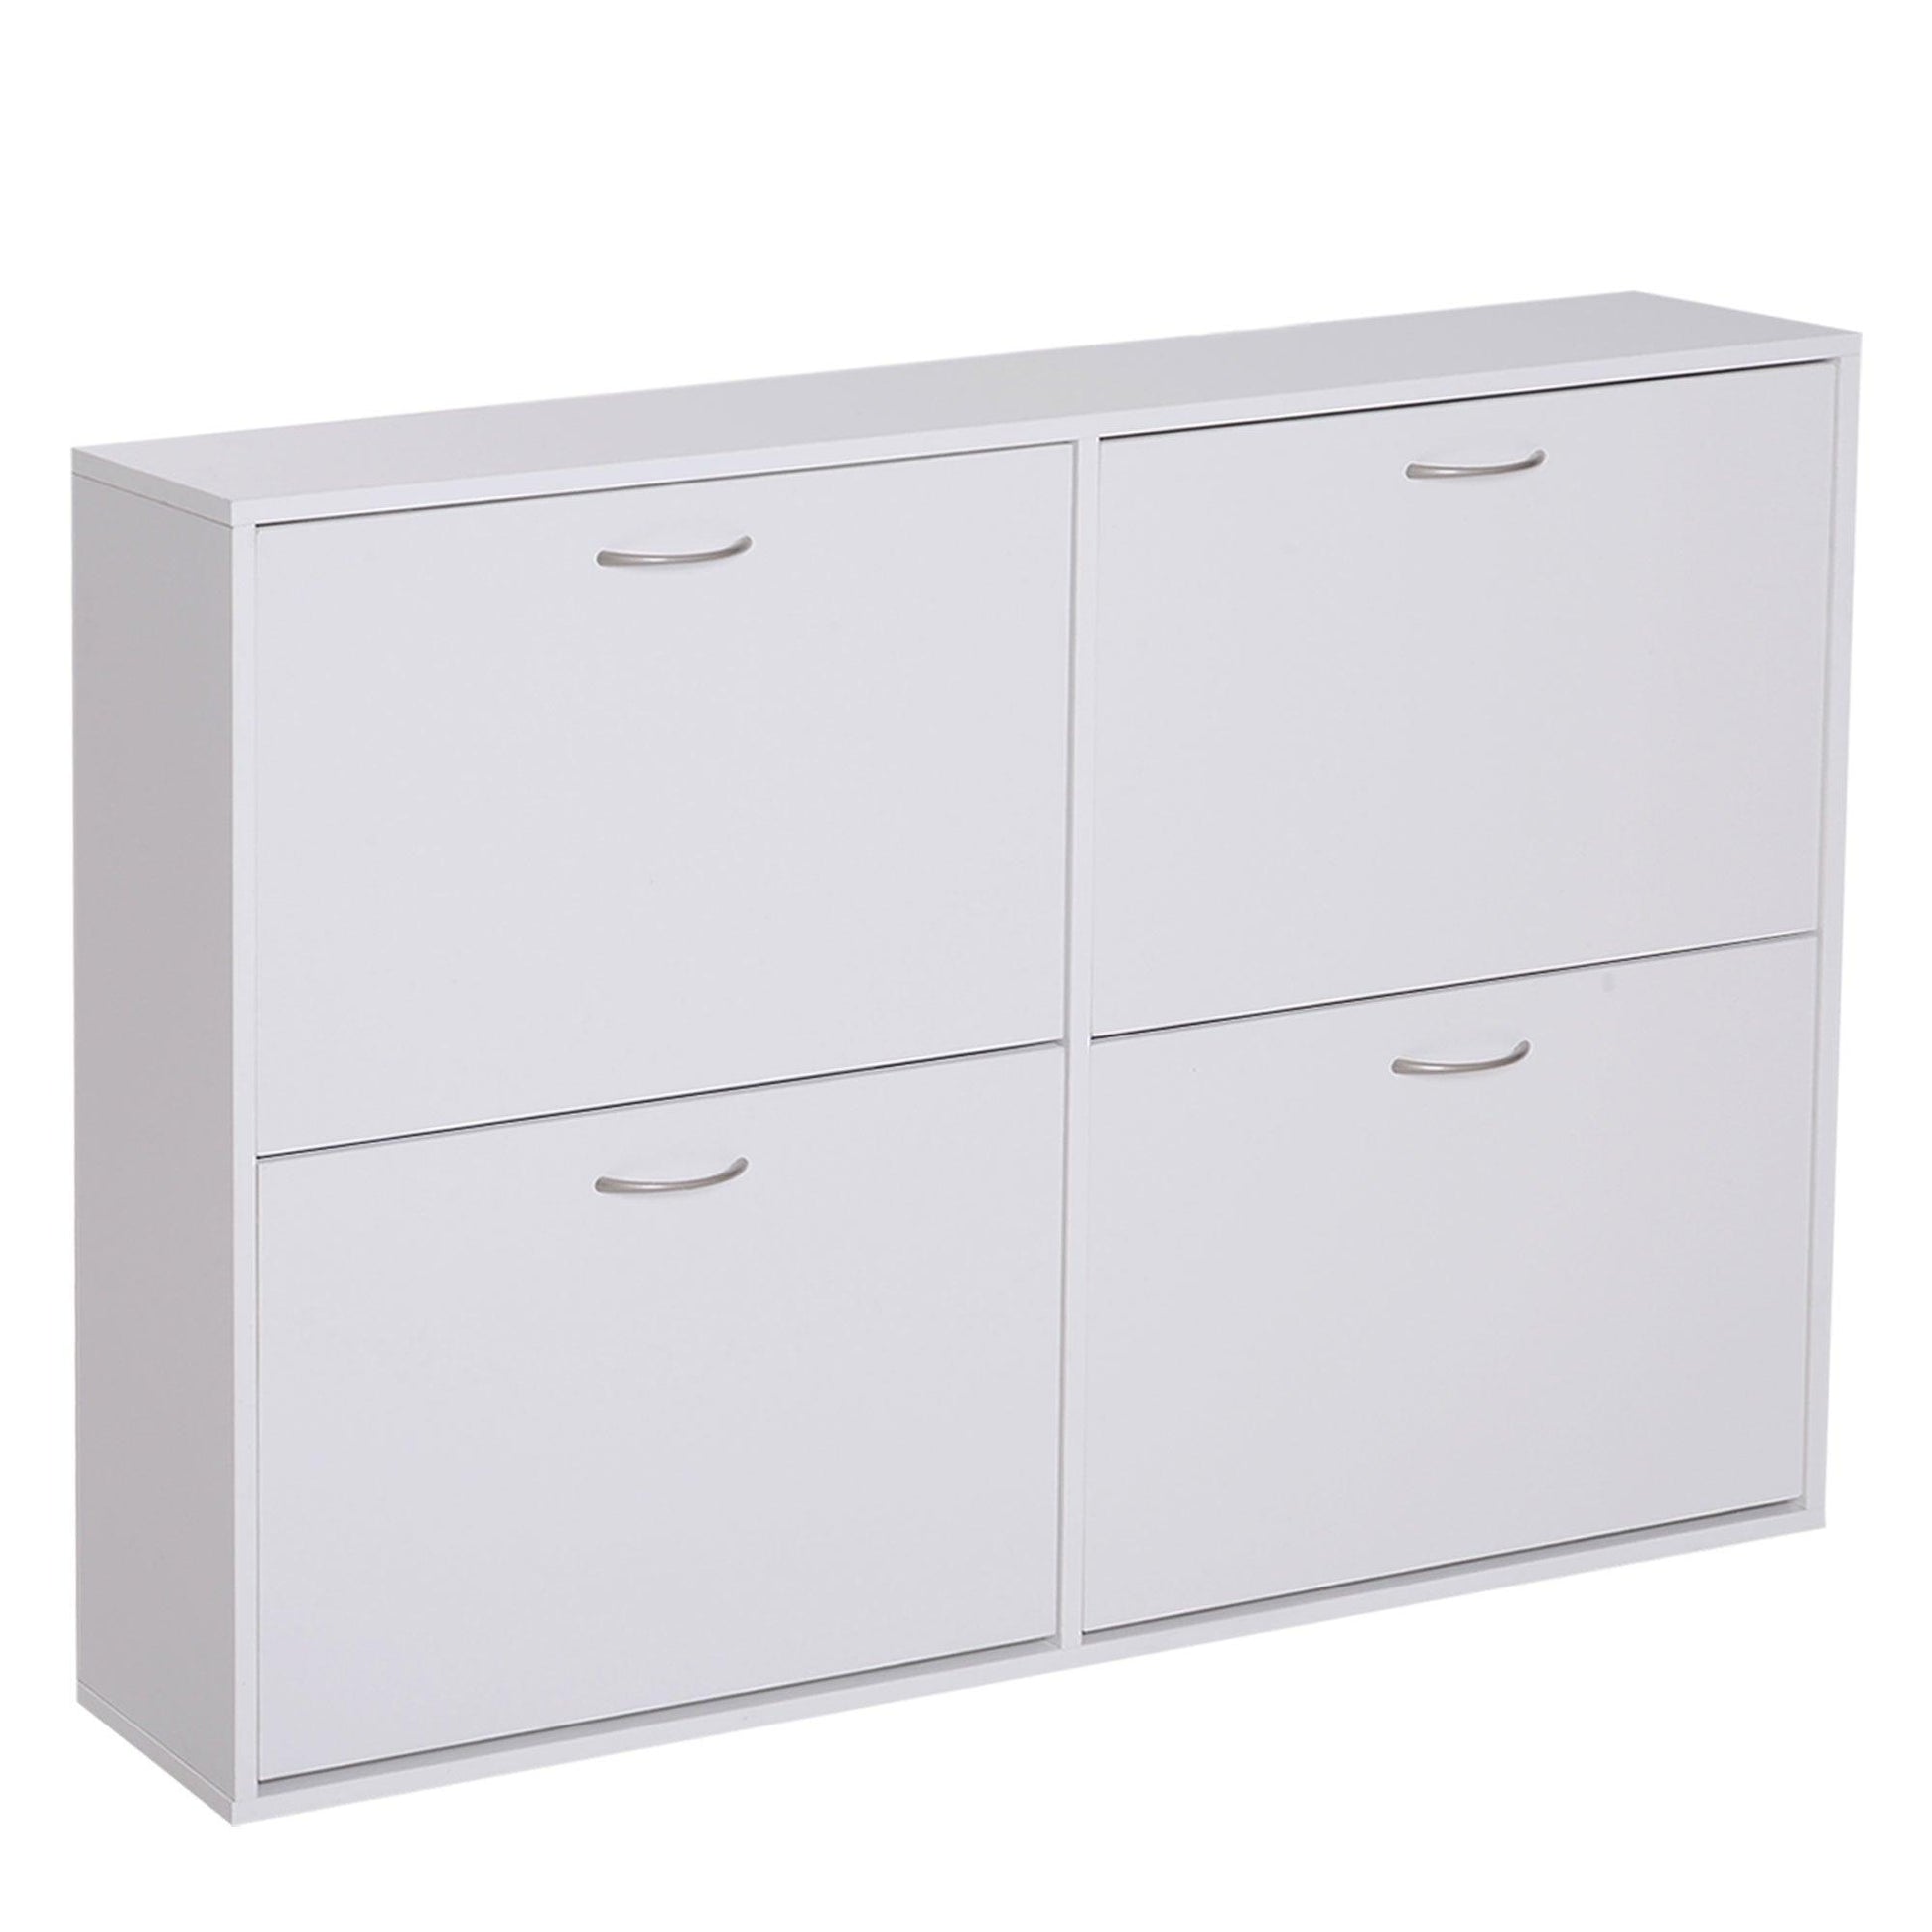 HOMCOM Shoe Cabinet - White, 120x24x81 cm - ALL4U RETAILER LTD